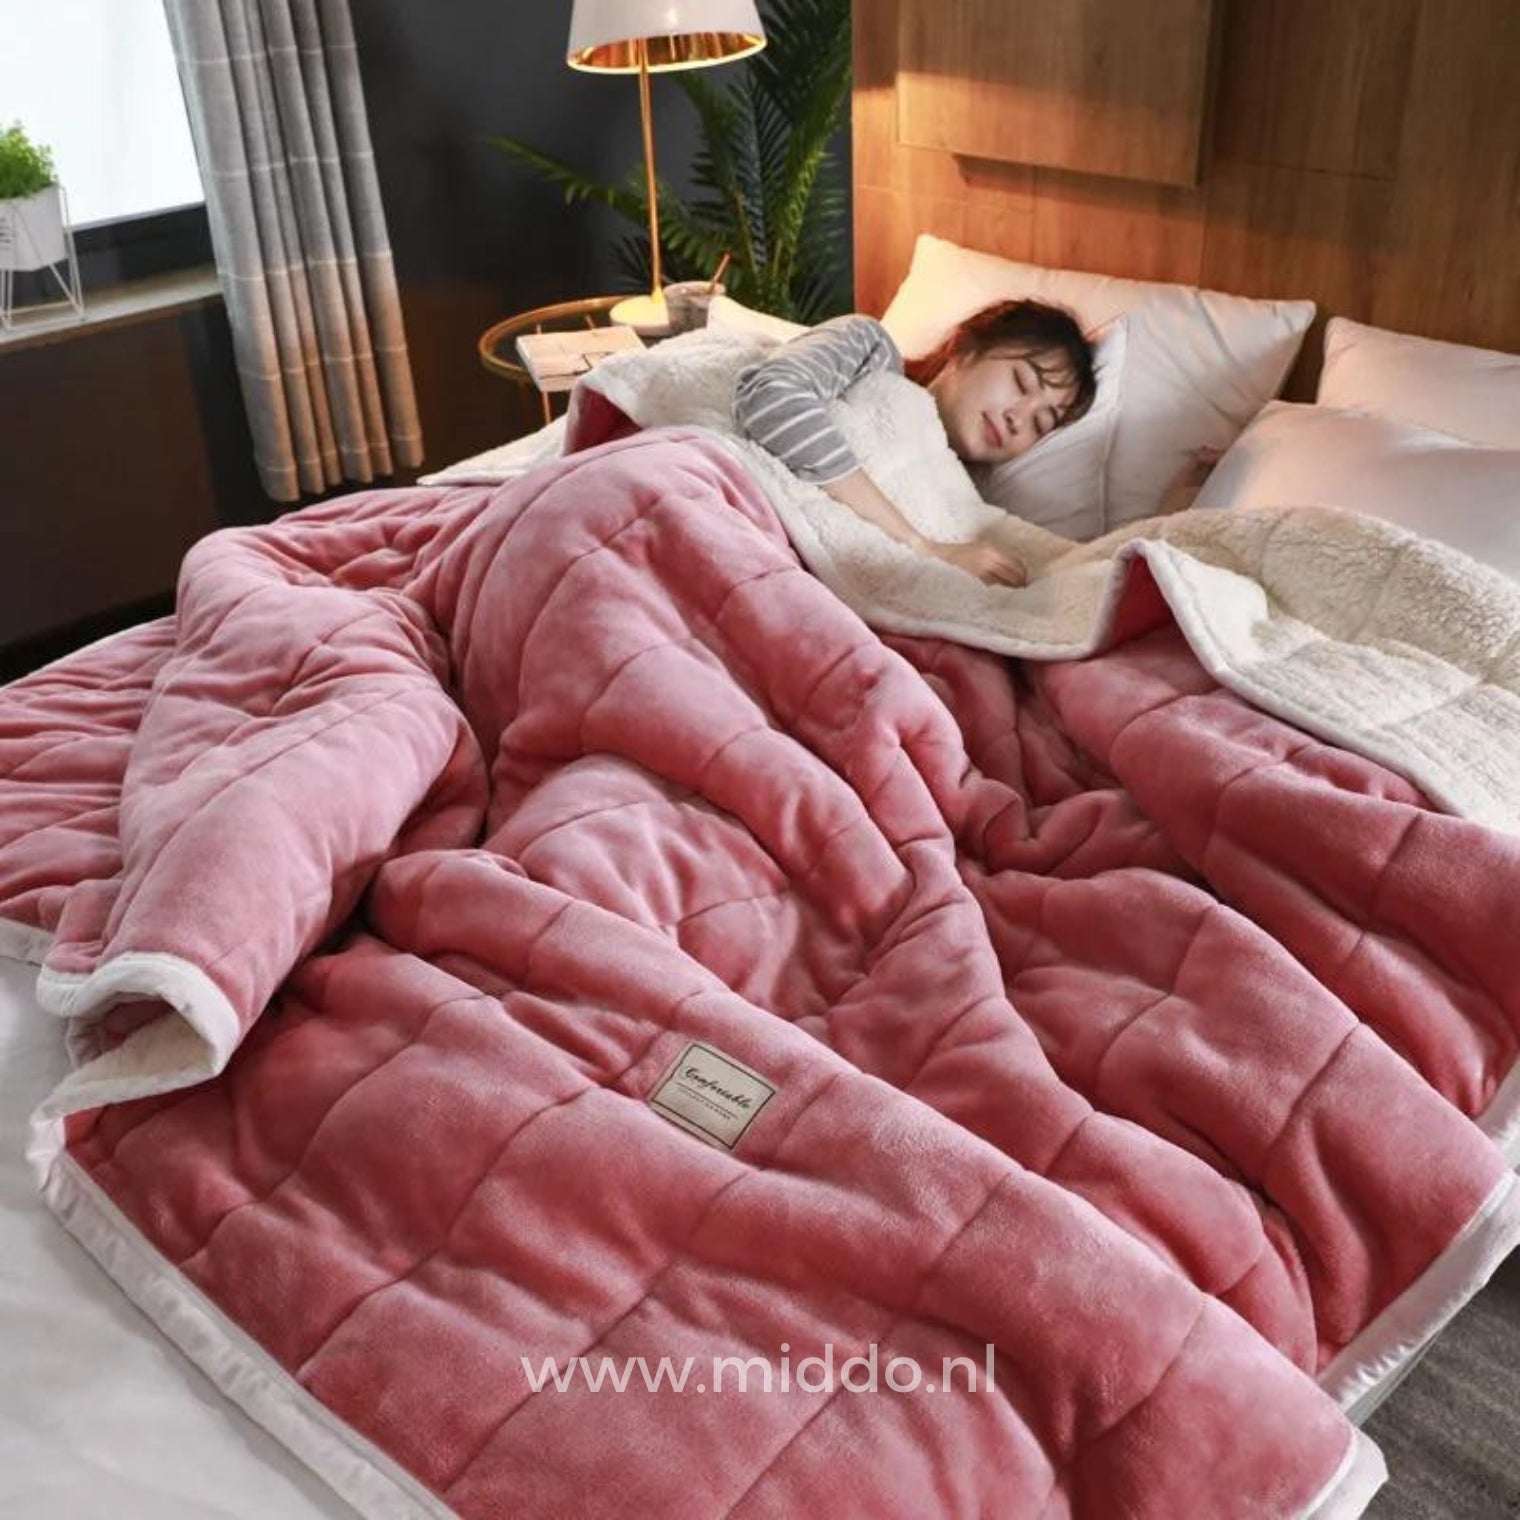 CozyFleece roze pluche woldeken op bed met slapende persoon